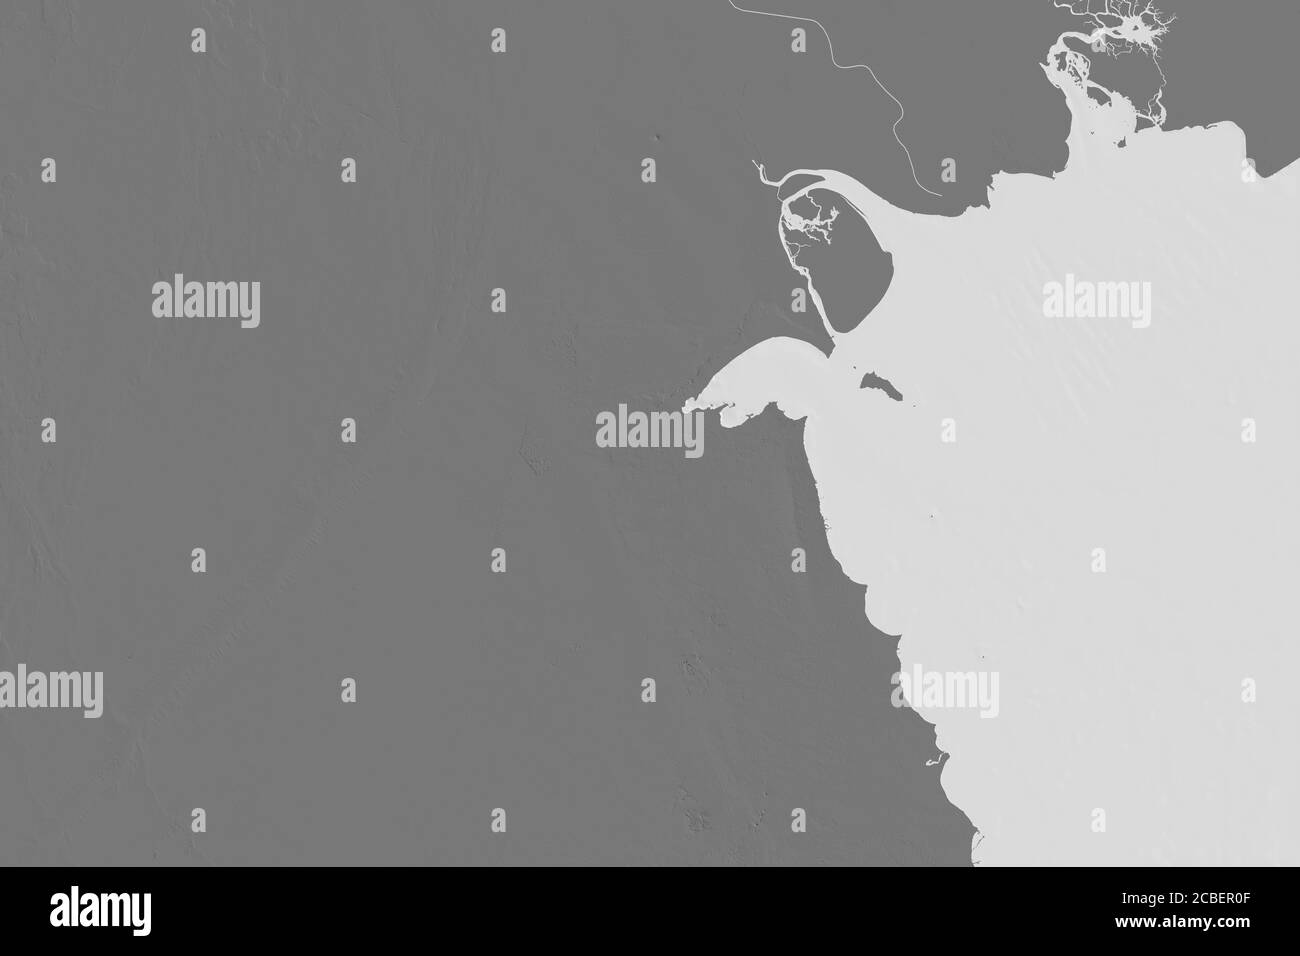 Zone étendue du Koweït. Carte d'élévation à deux niveaux. Rendu 3D Banque D'Images